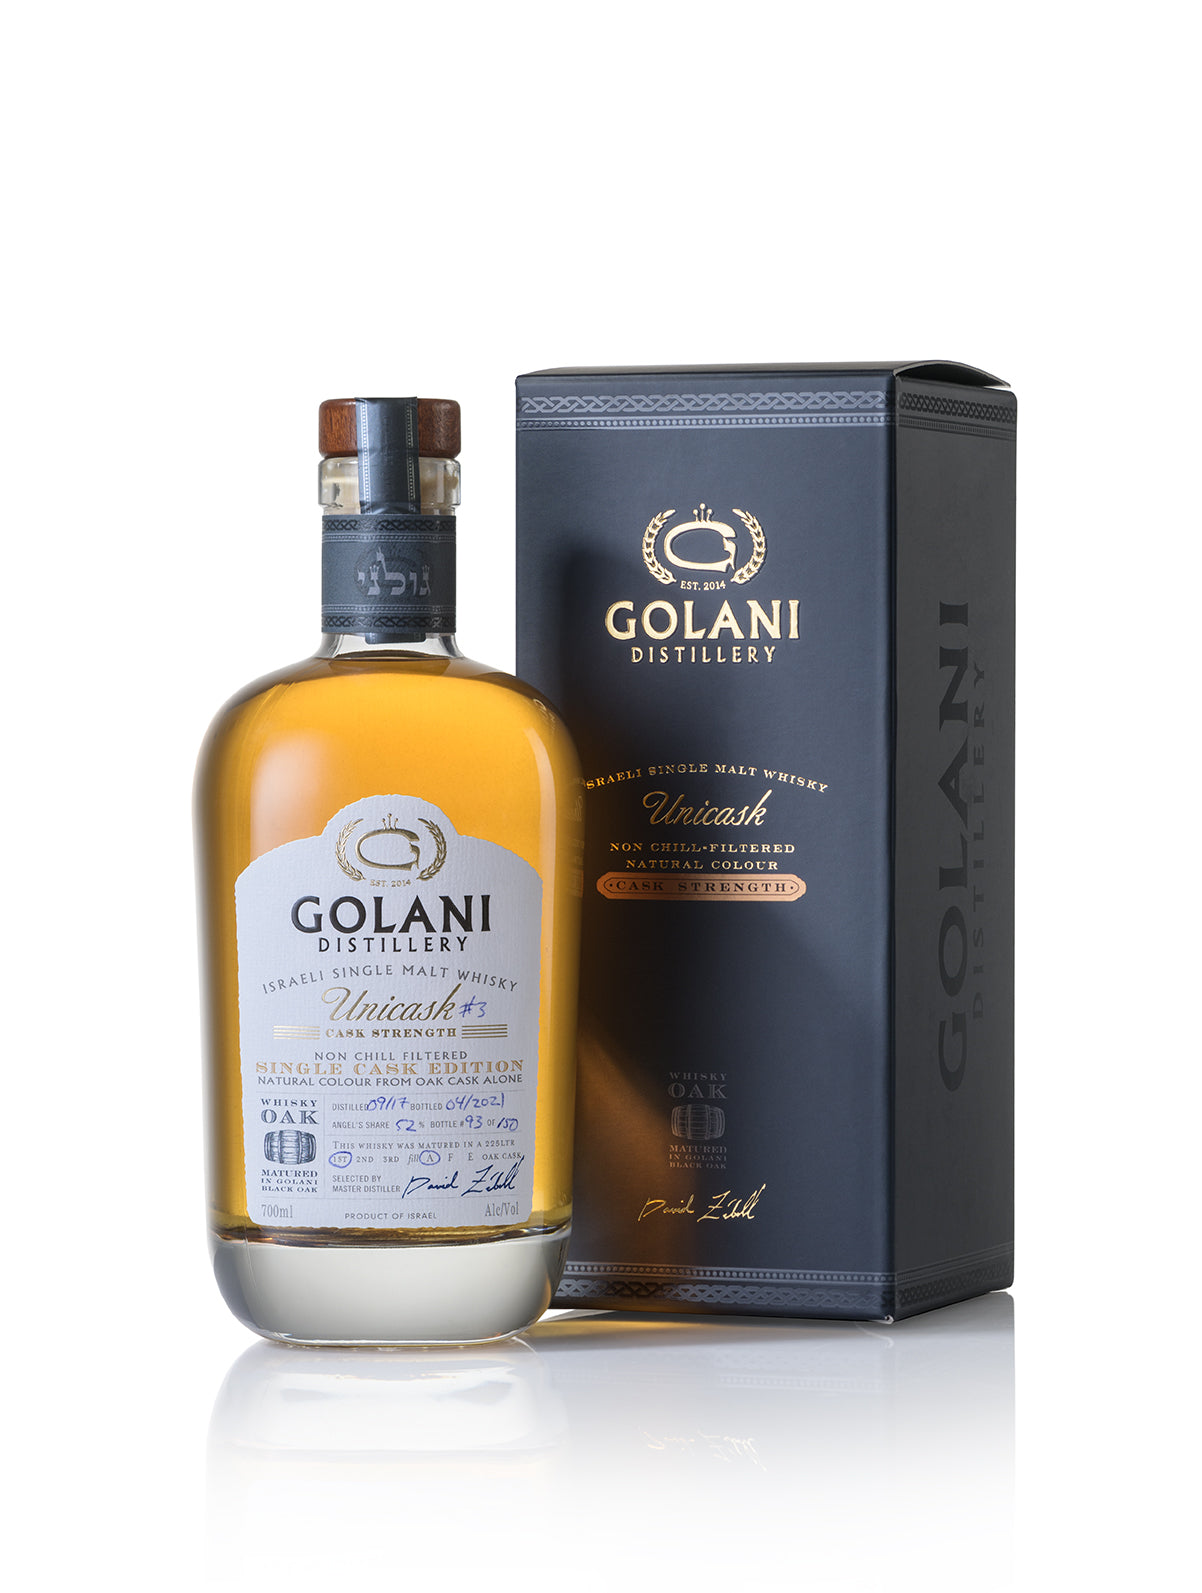 Golani Unicask Whisky Oak Cask Strength